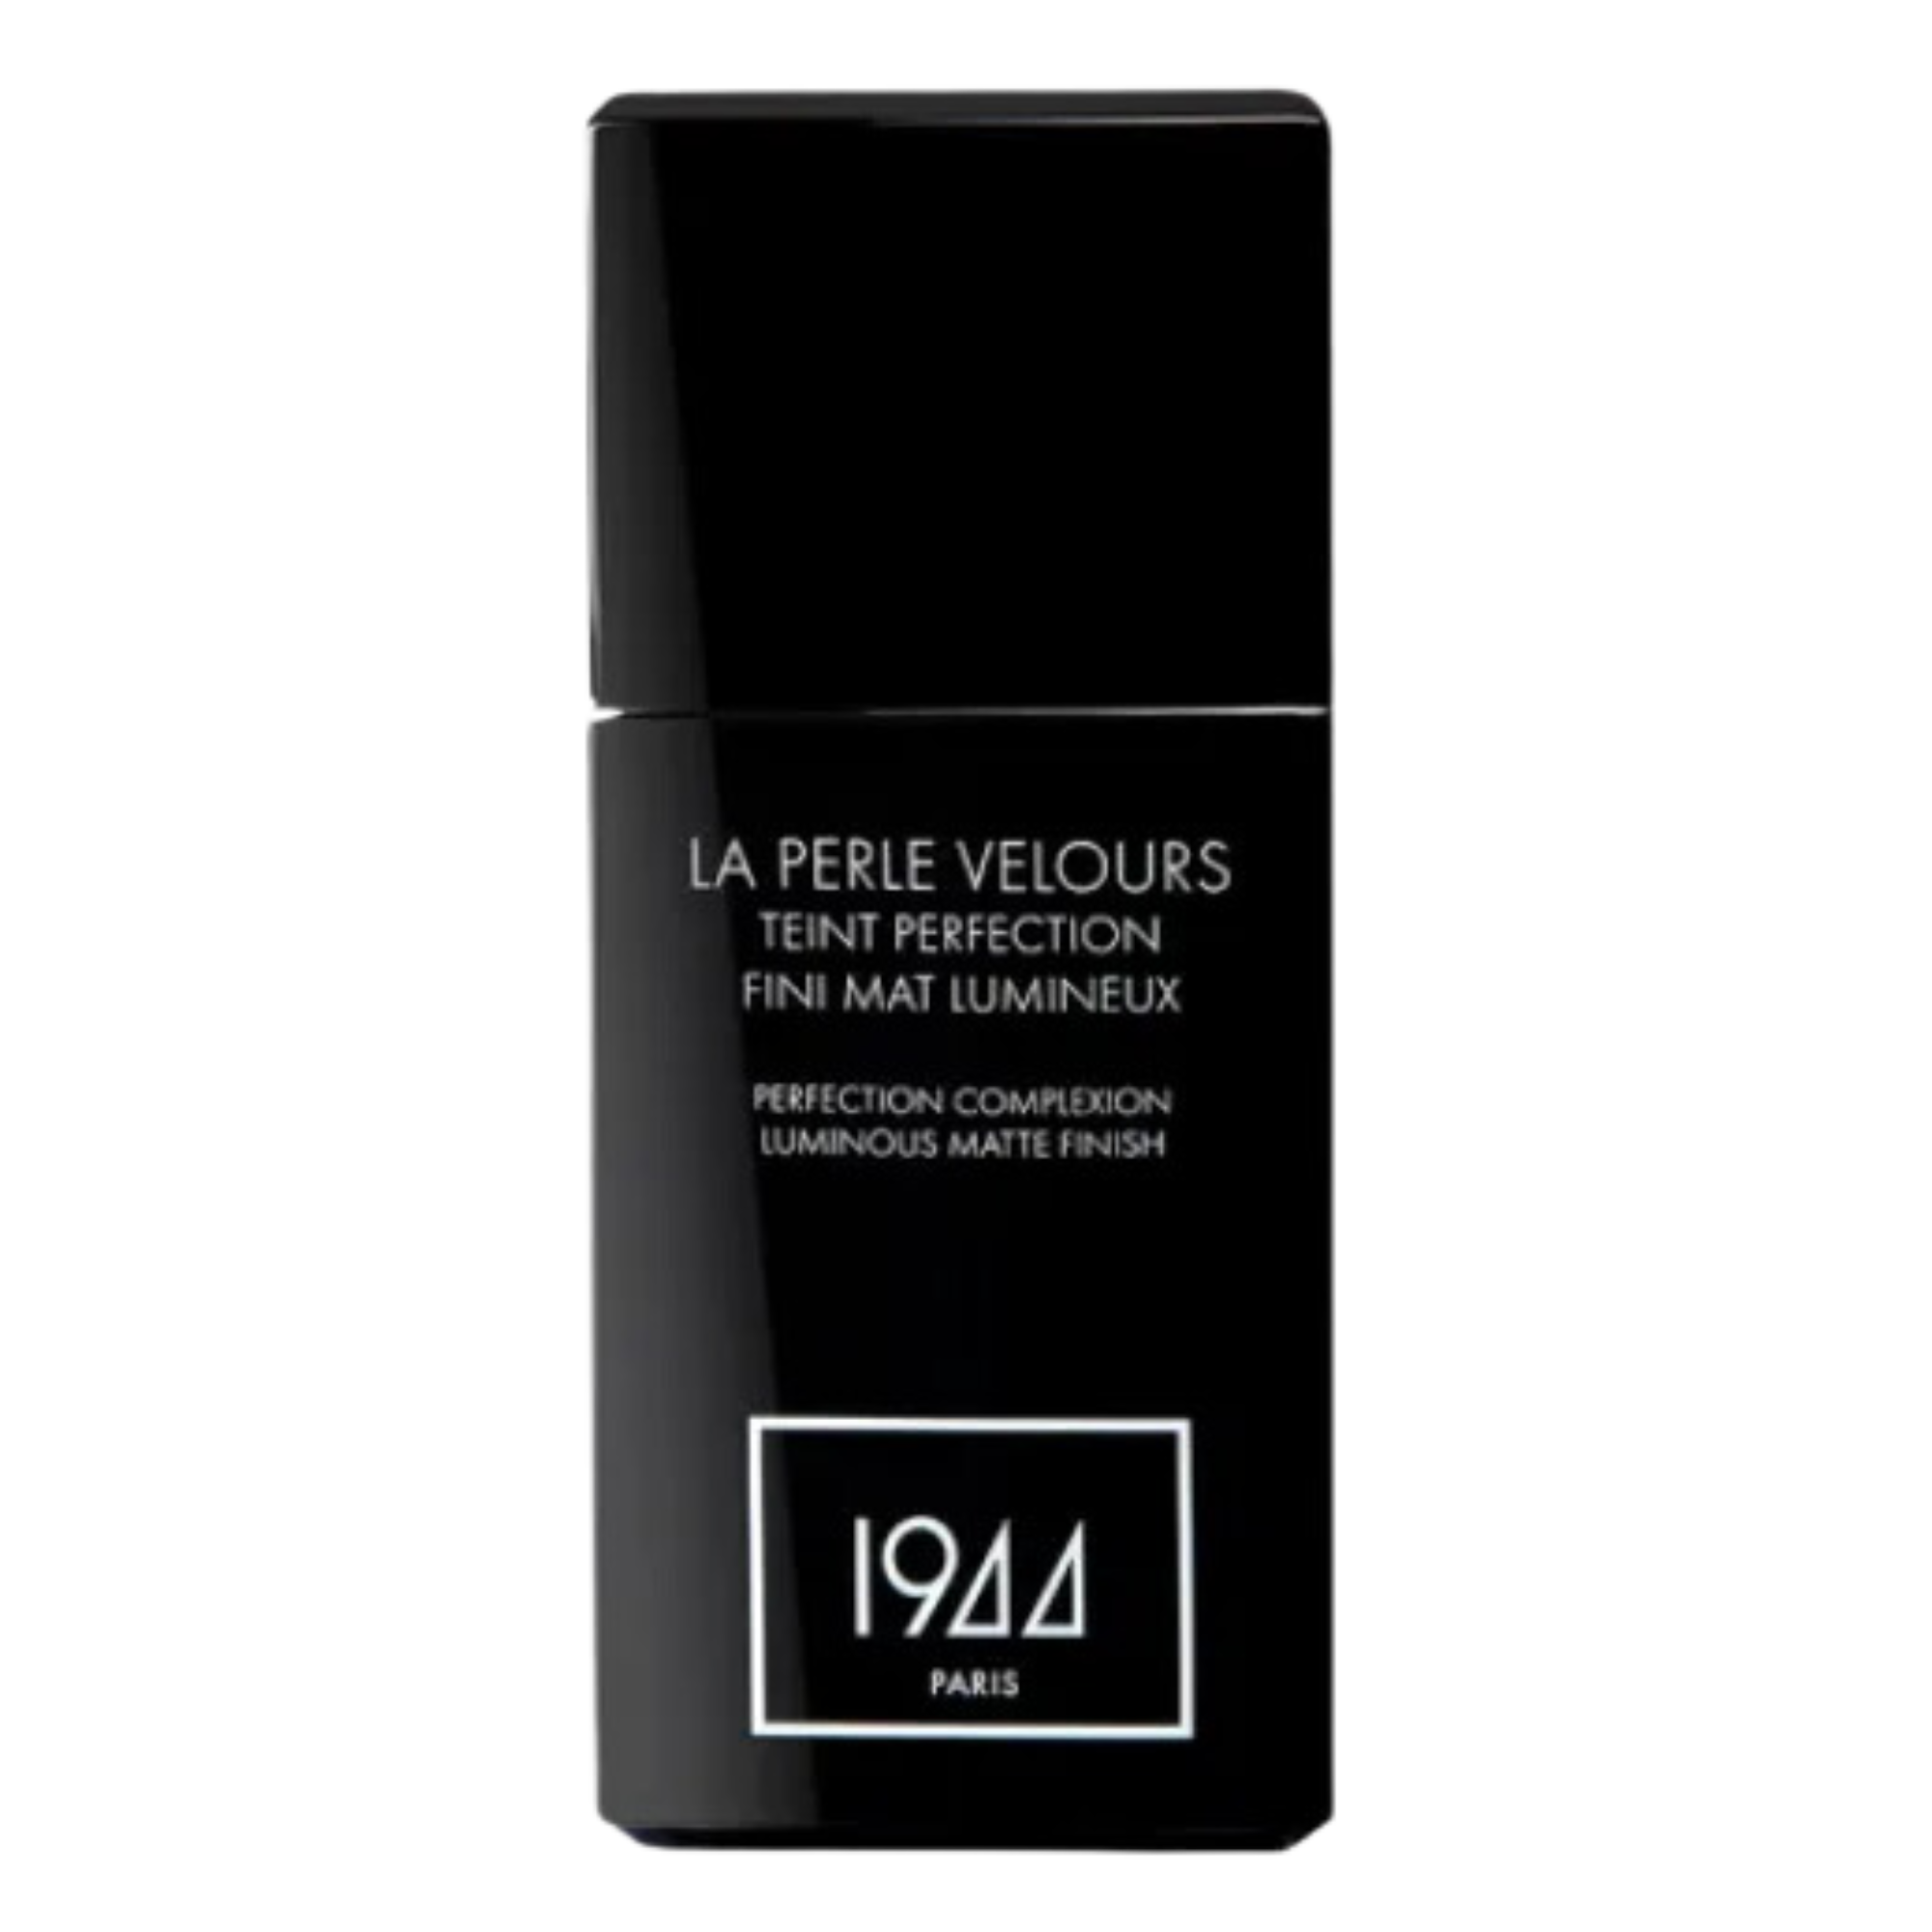 цена Тональный крем для лица ft203 бежевый ду 1944 Paris La Perle Velours, 30 мл